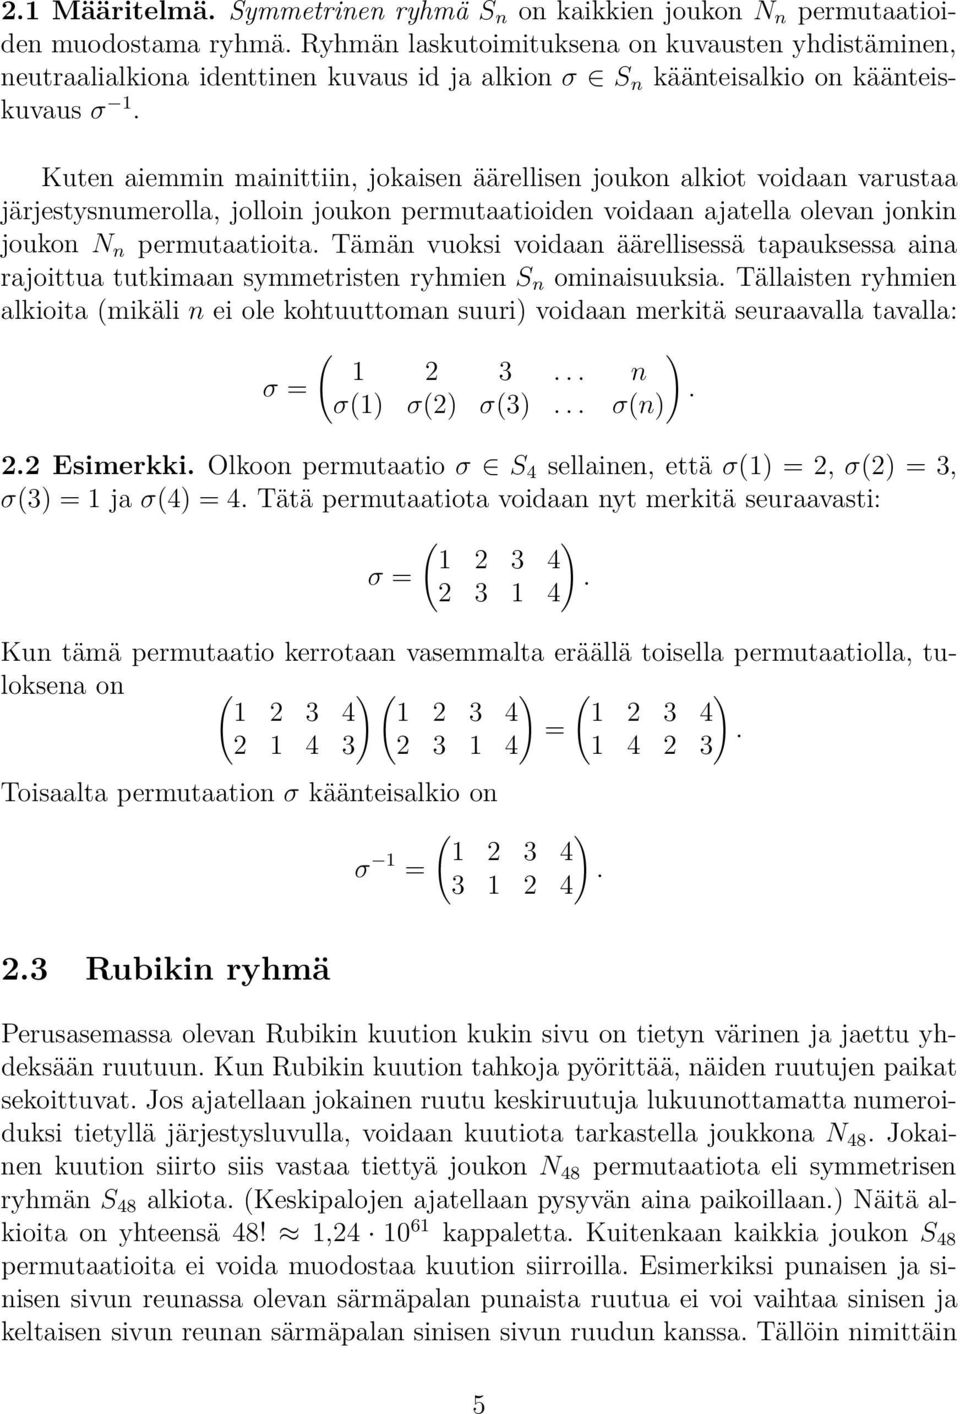 joukon N n permutaatioita Tämän vuoksi voidaan äärellisessä tapauksessa aina rajoittua tutkimaan symmetristen ryhmien S n ominaisuuksia Tällaisten ryhmien alkioita (mikäli n ei ole kohtuuttoman